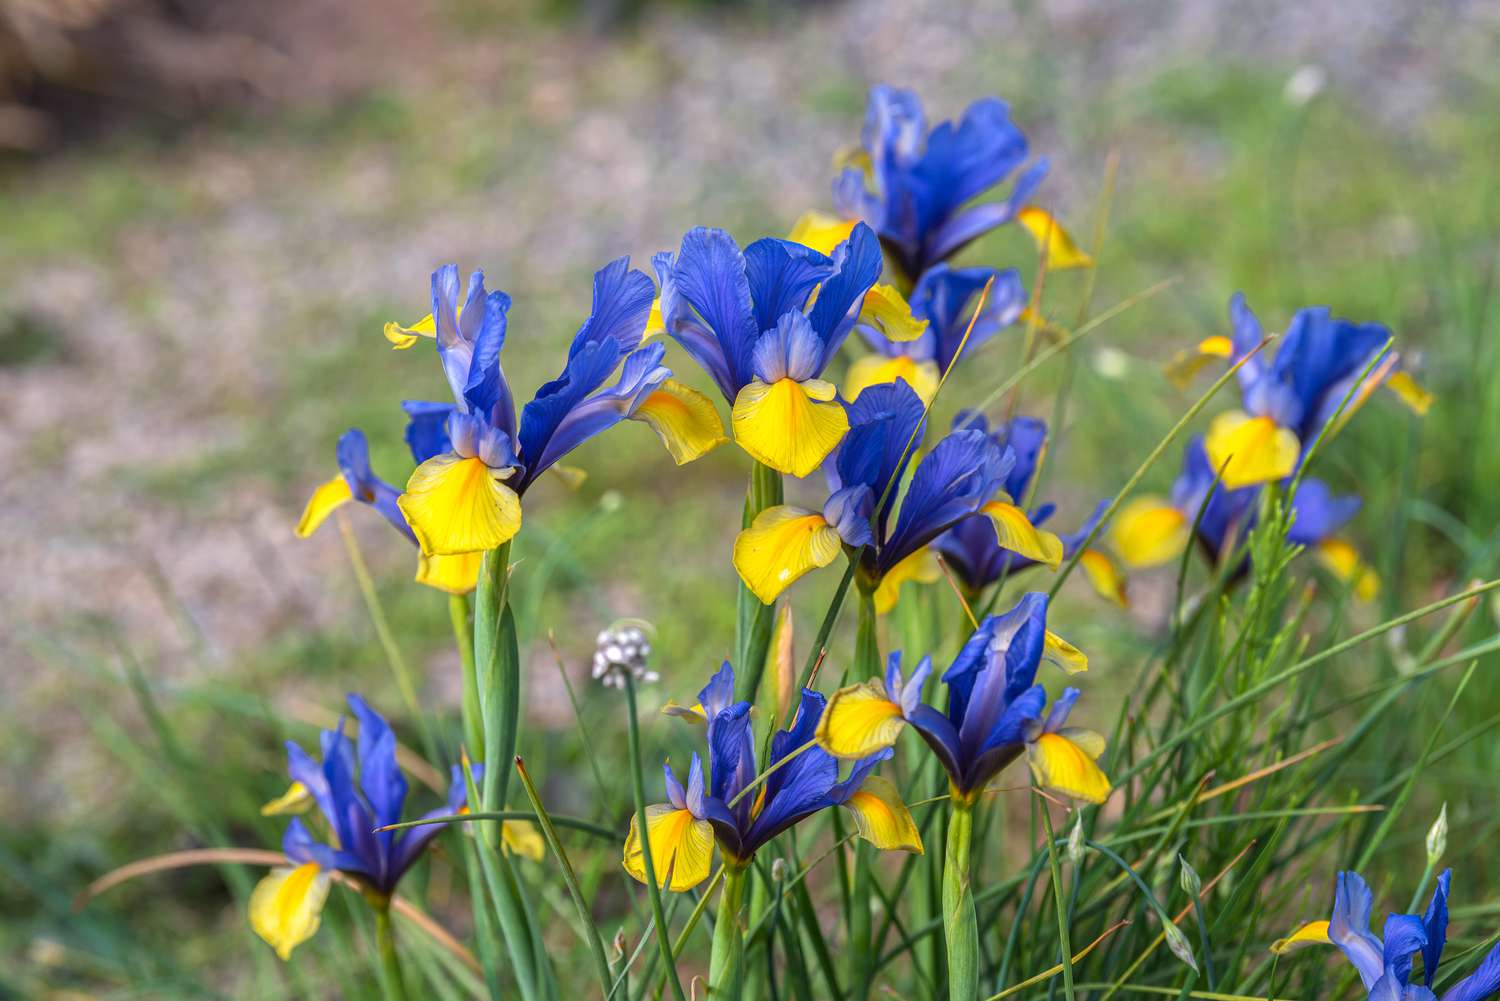 Irisblüten mit blauer Standarte und gelben Fallblättern an dünnen Stielen 